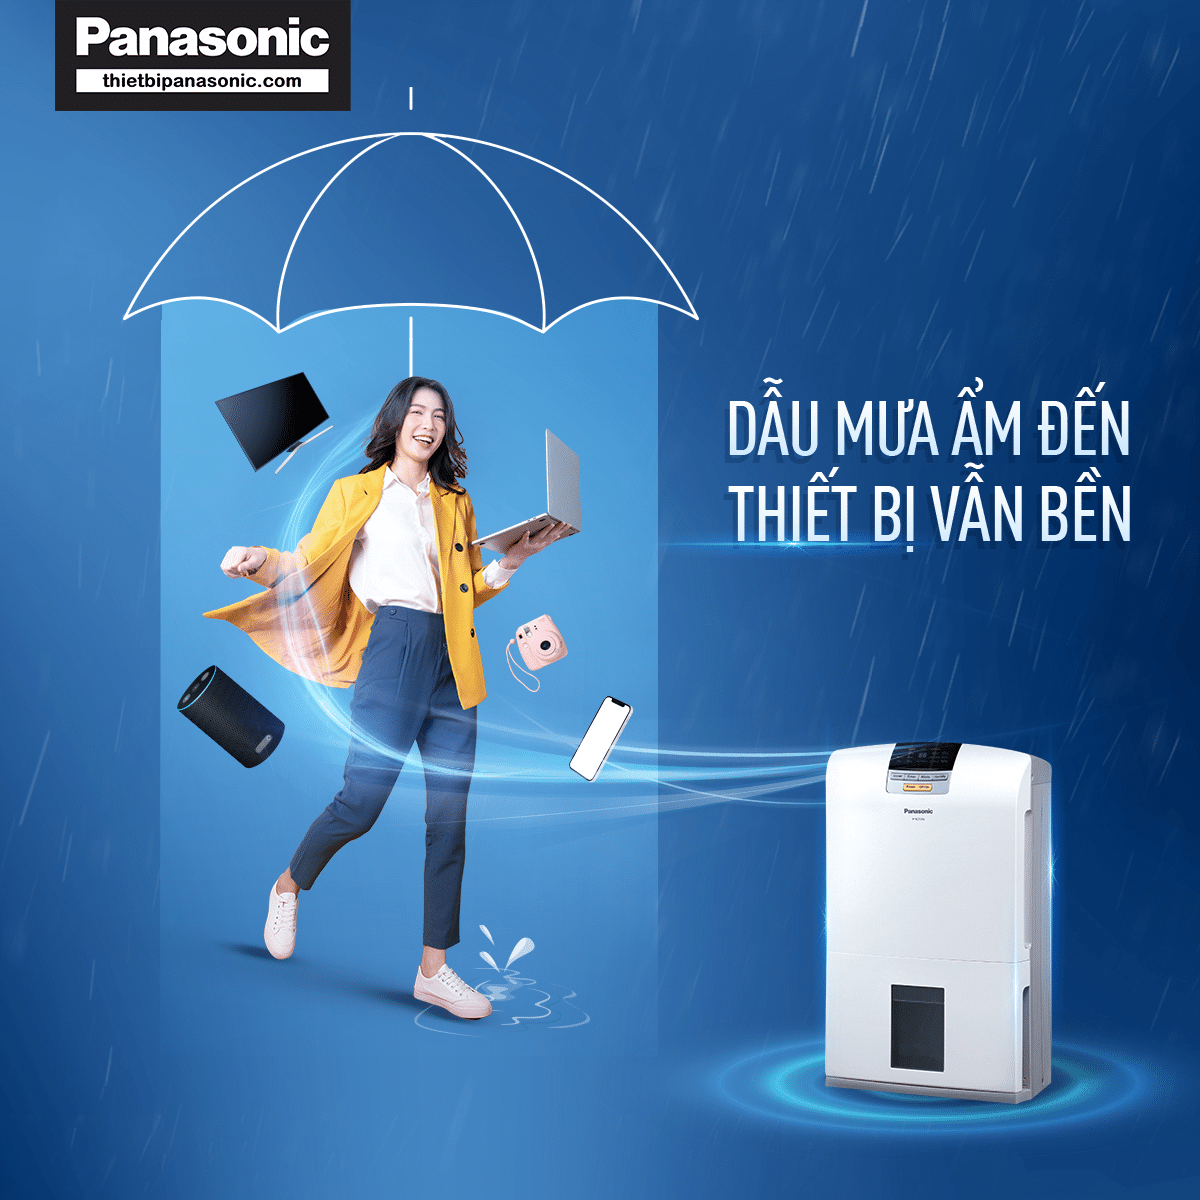 Các thiết bị điện tử vẫn bền bỉ trong điều kiện ẩm ướt nhờ máy hút ẩm Panasonic